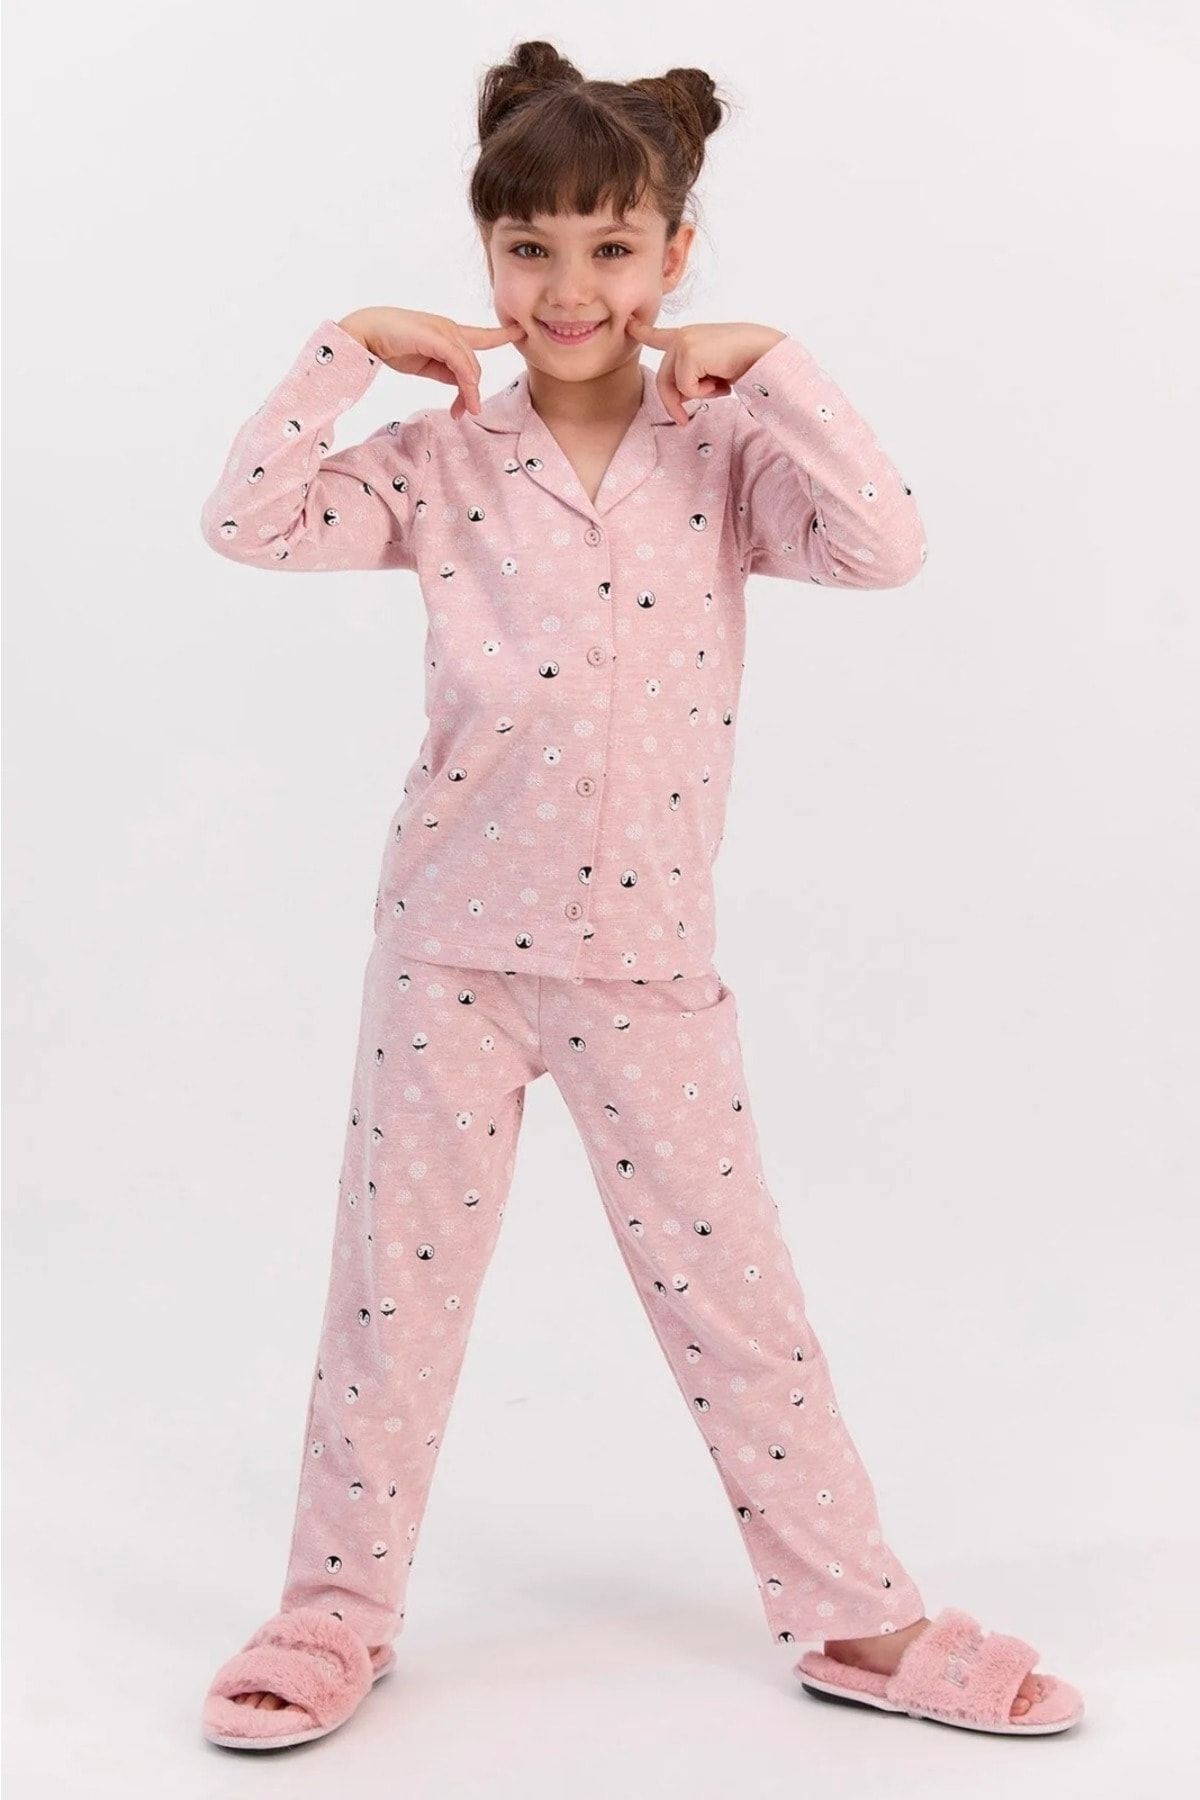 Rolypoly Rolypoly Snows Pembemelanj Kız Çocuk Mevsimlik Gömlek Pijama Takımı